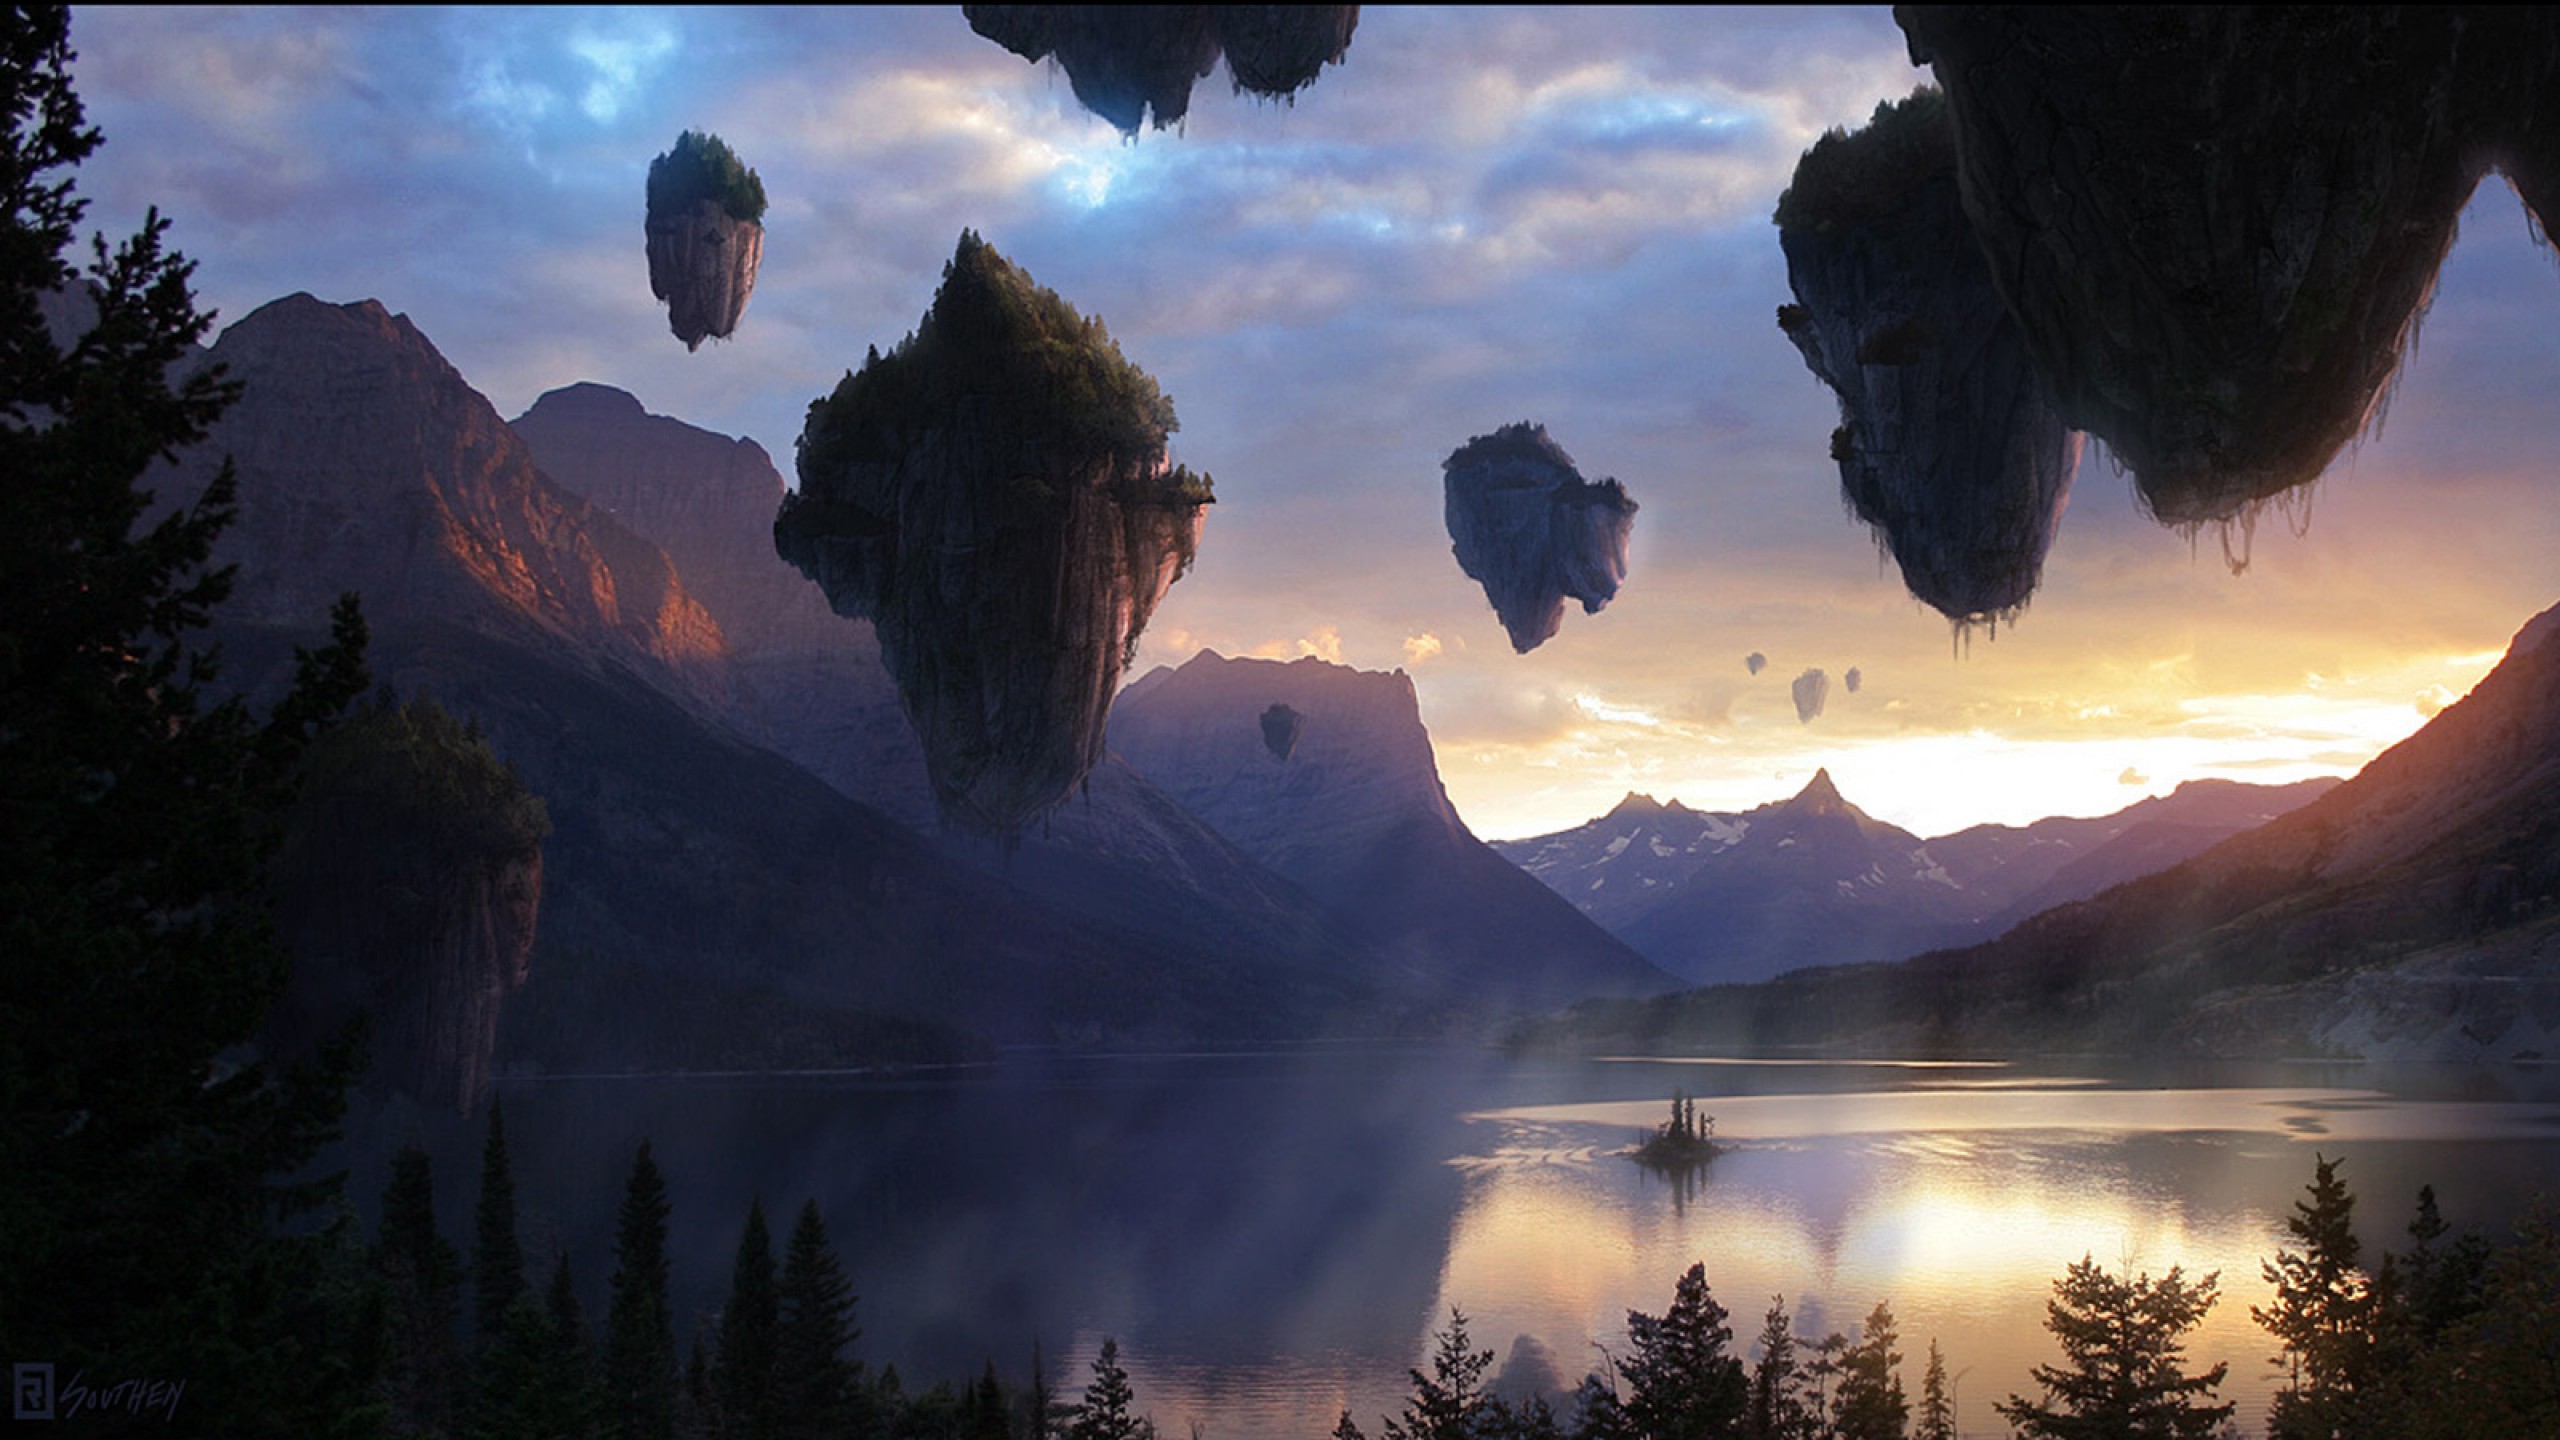 floating-island-sunset-evening-avatar-fantasy-mountain-lake-landscape-nature.jpg